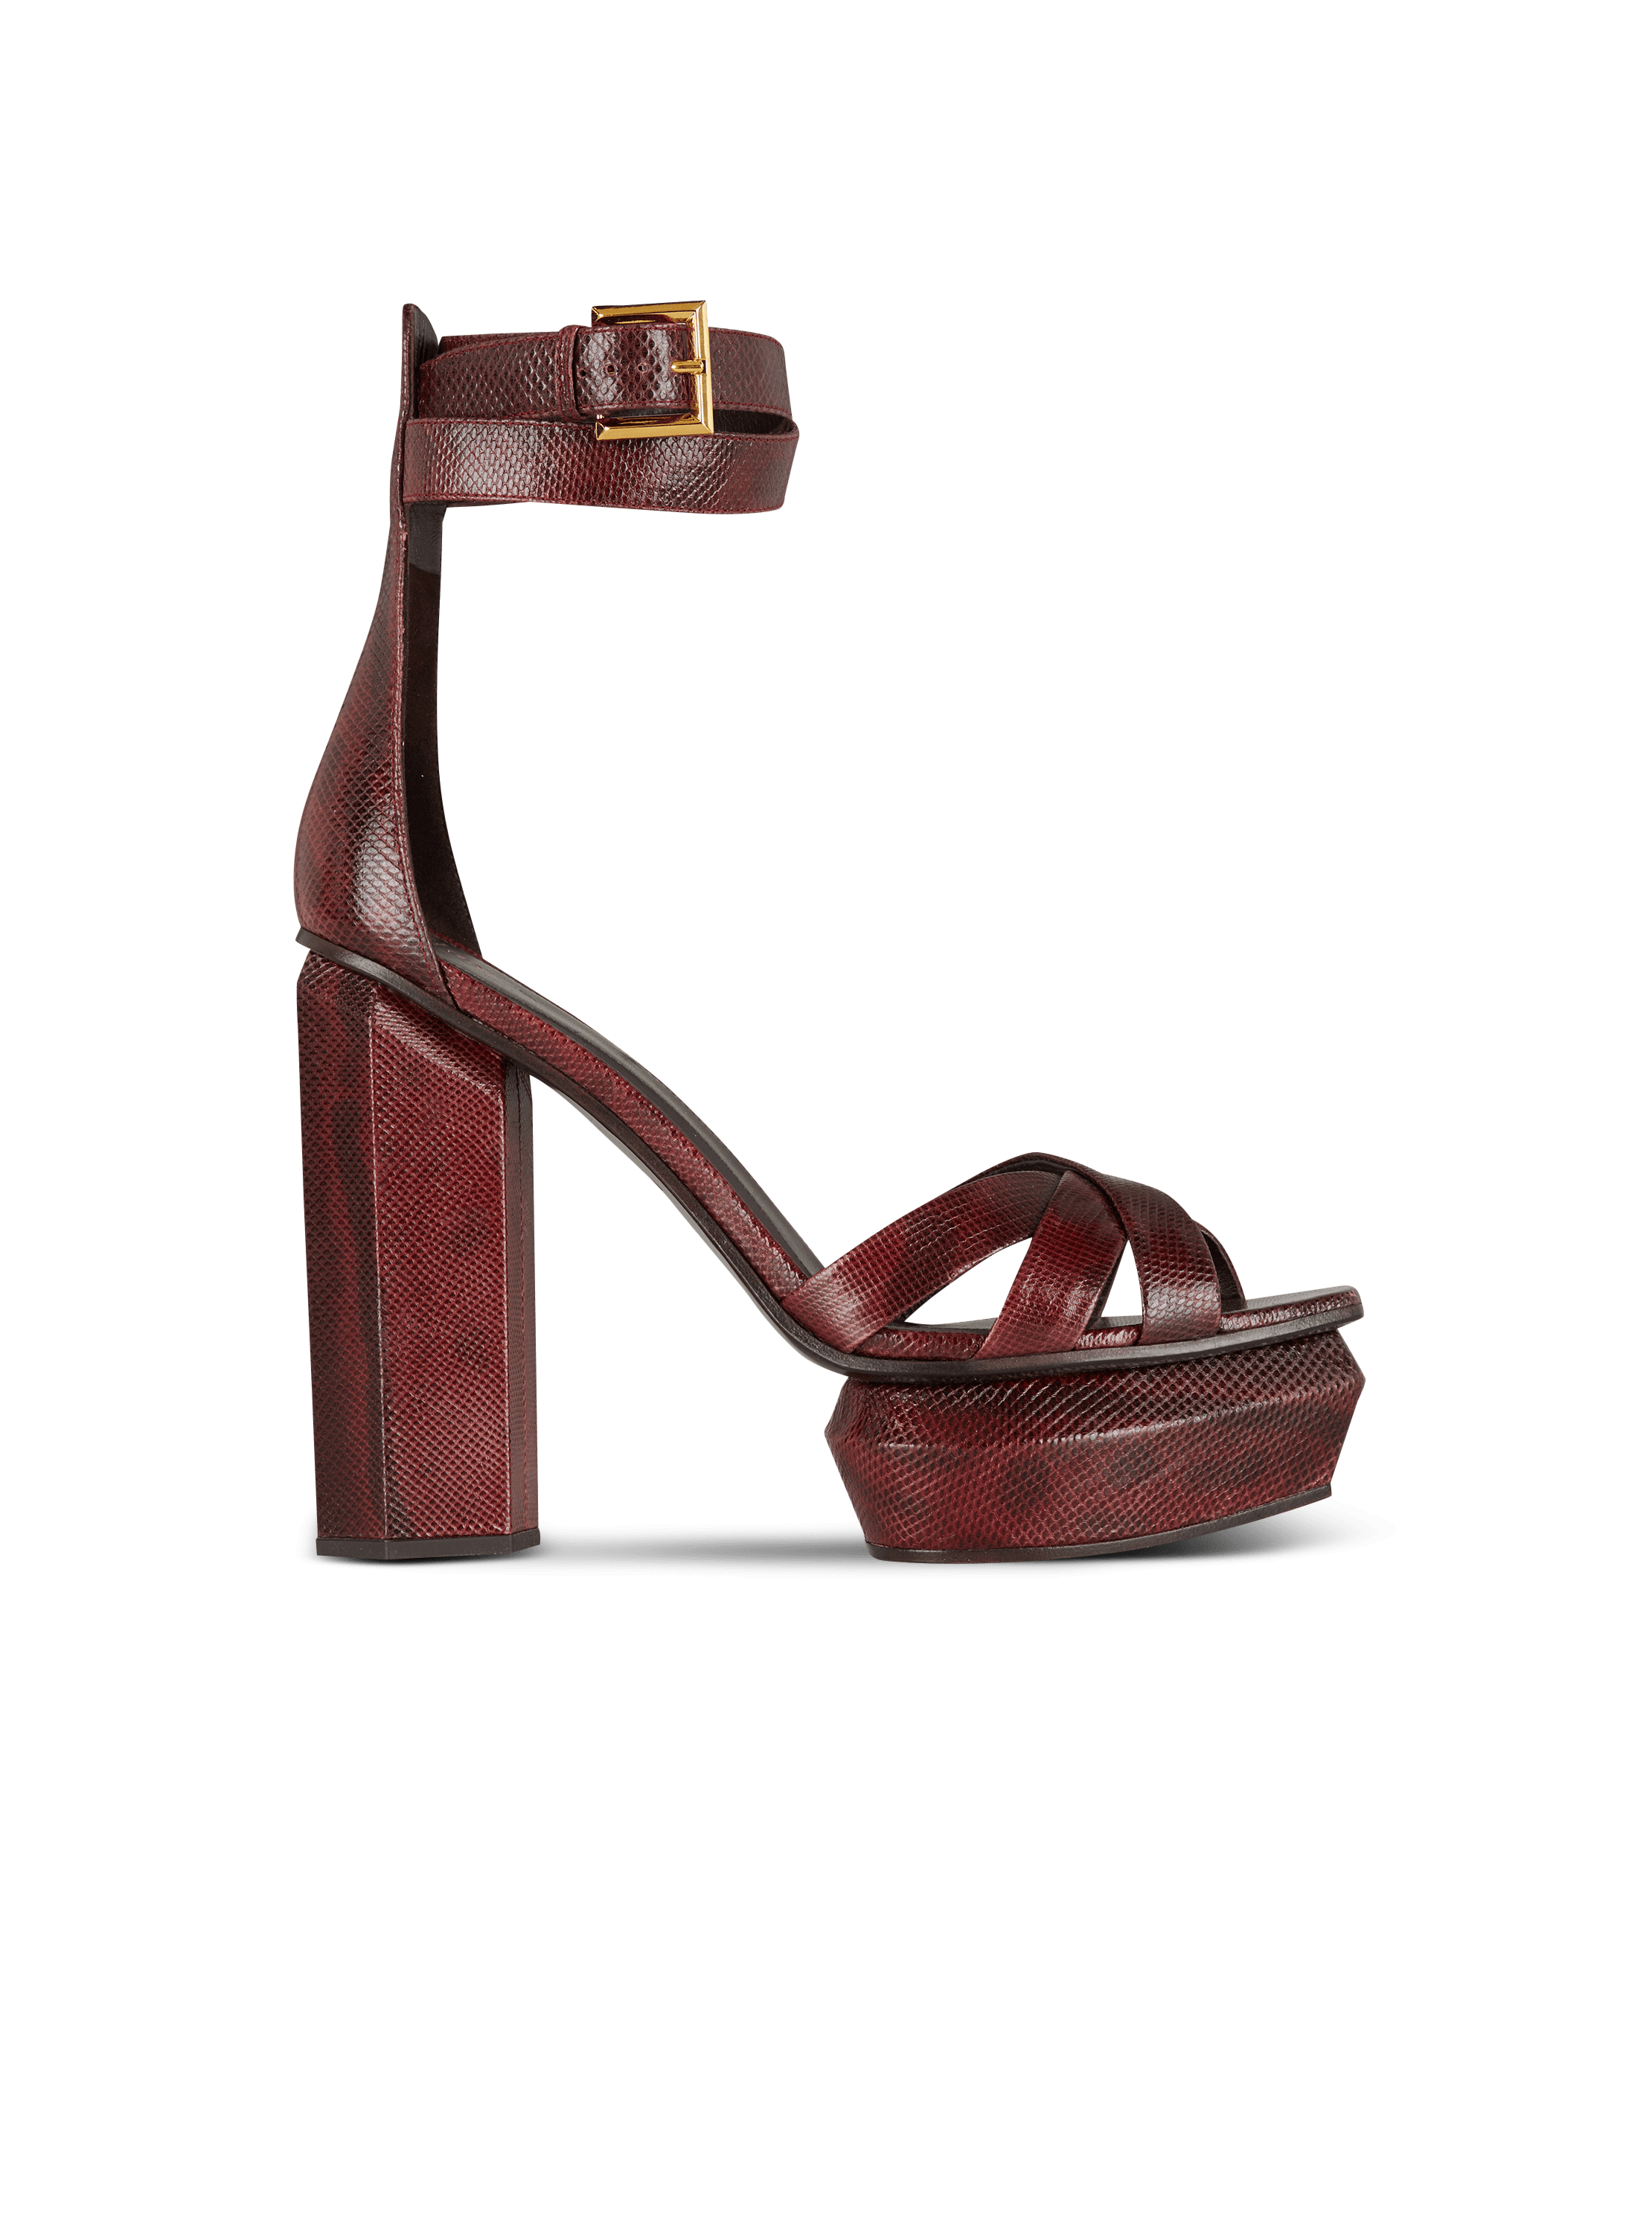 Ava Karung leather platform sandals